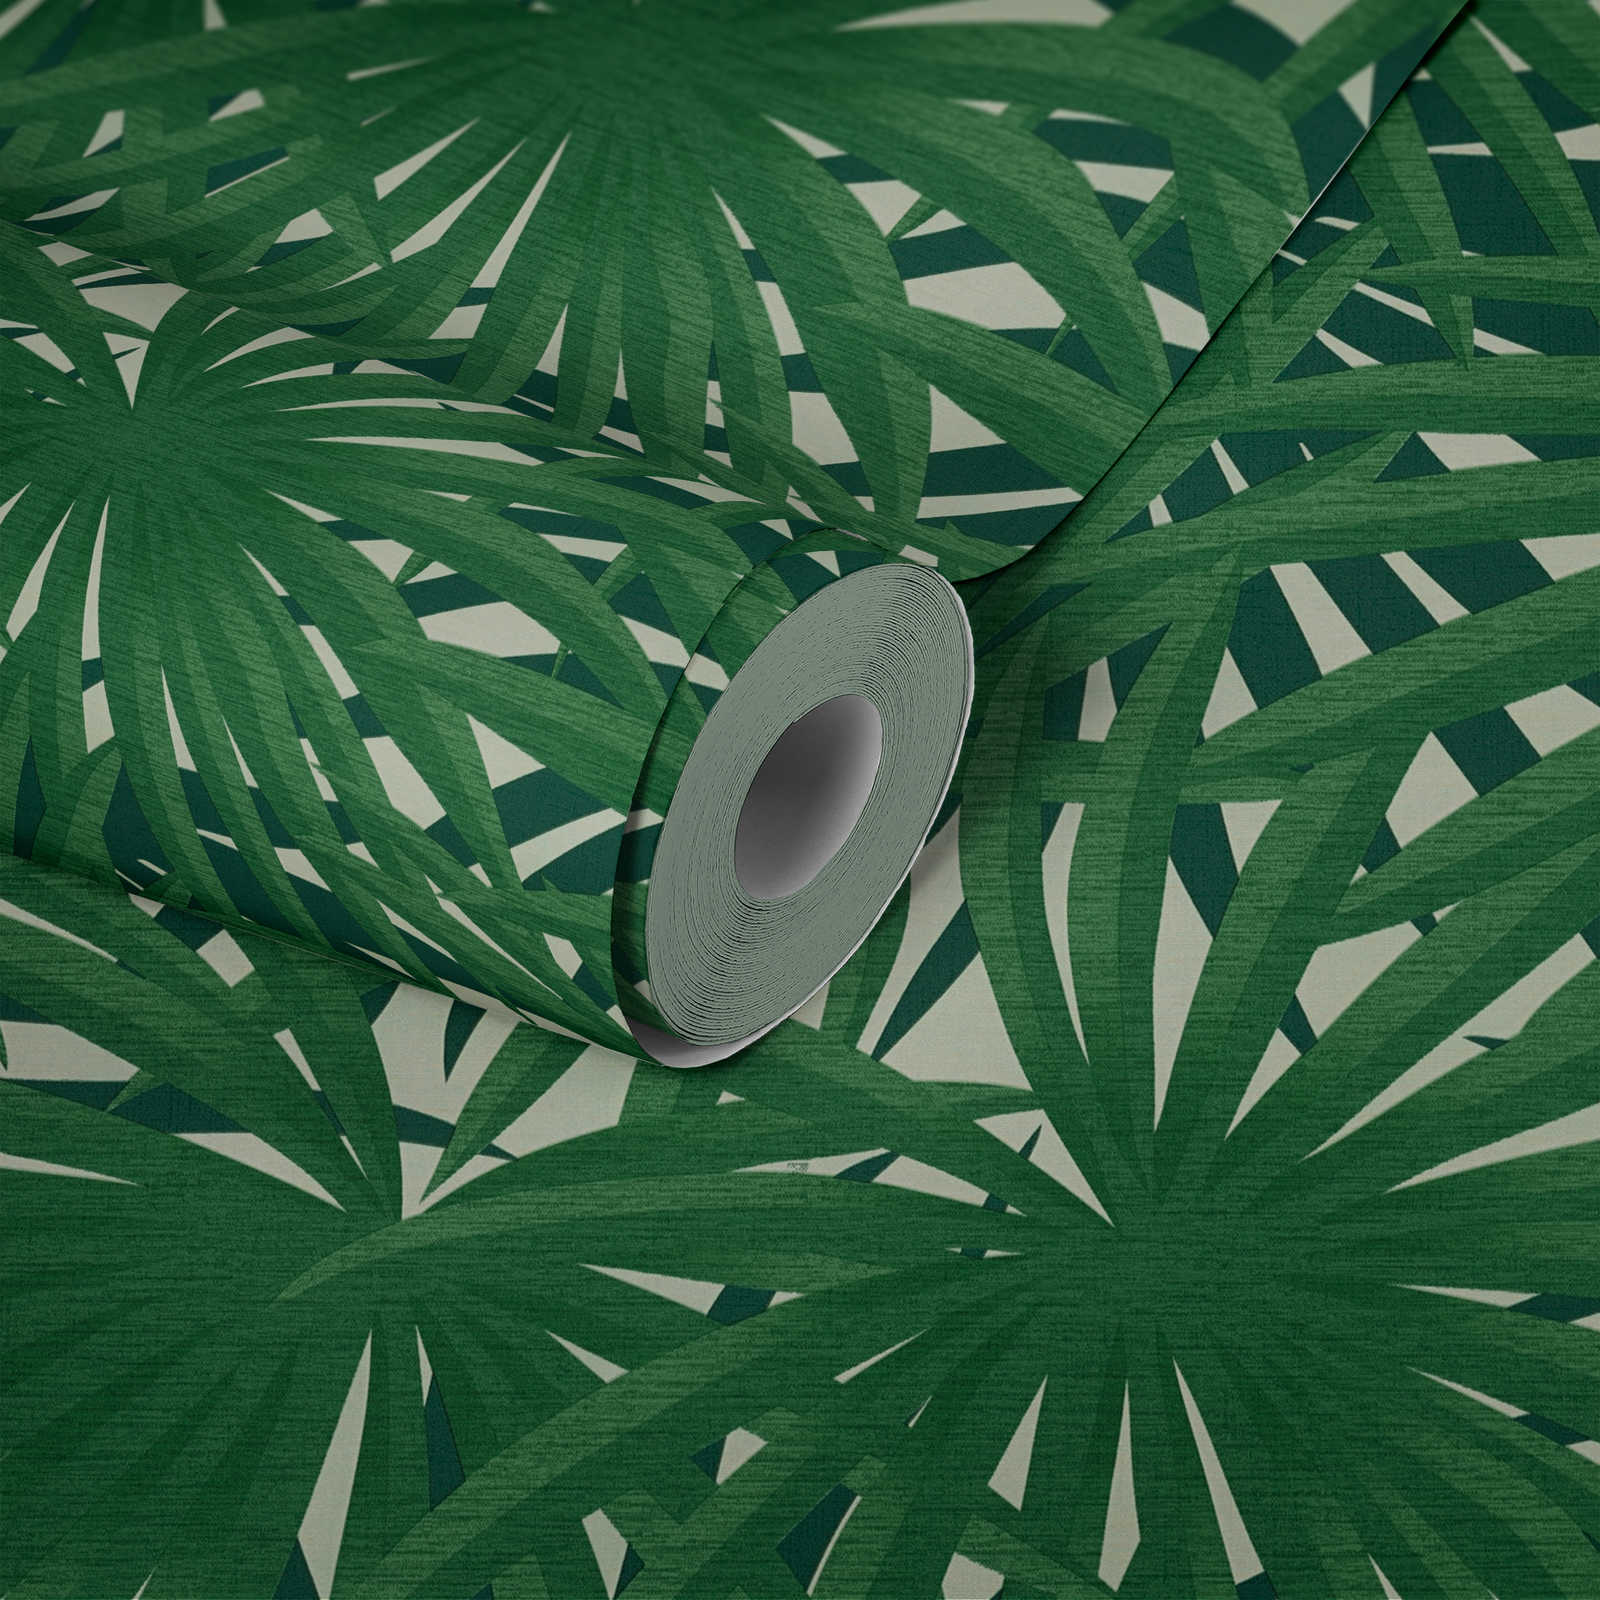             Tropisch behang met jungle design & metallic glans - groen, metallic, wit
        